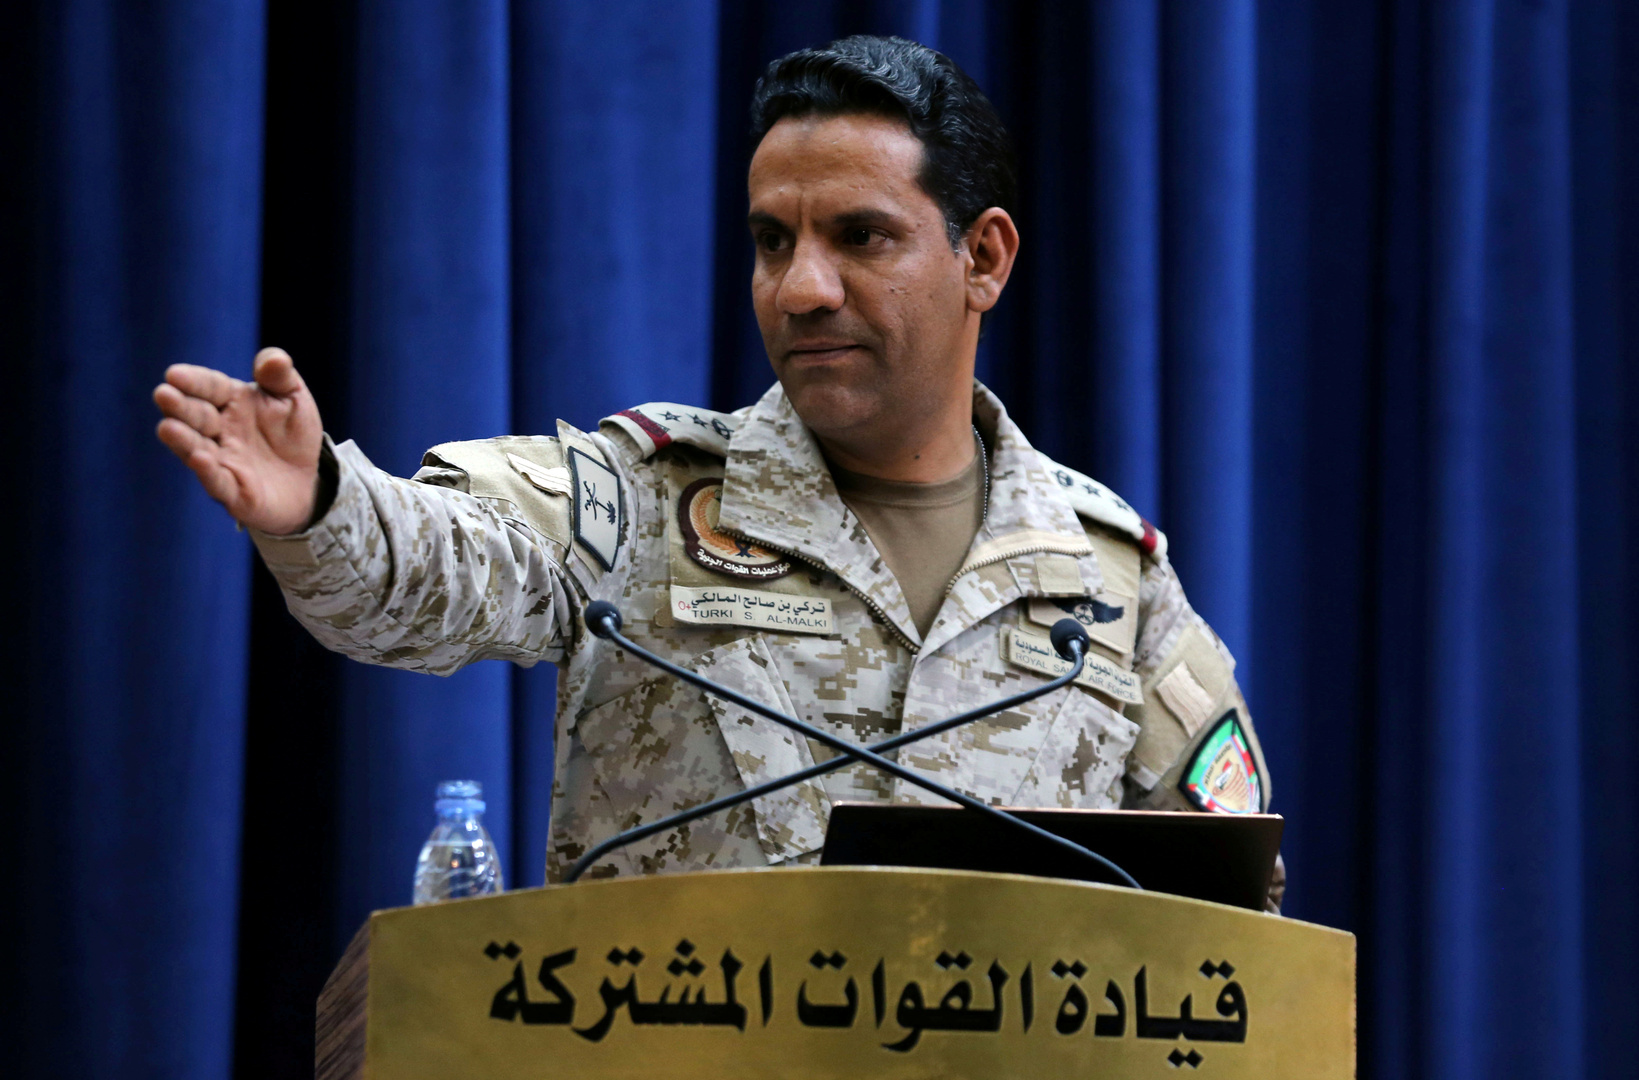 التحالف العربي يعلن محاكمة متهمين بمخالفة قواعد الاشتباك في اليمن